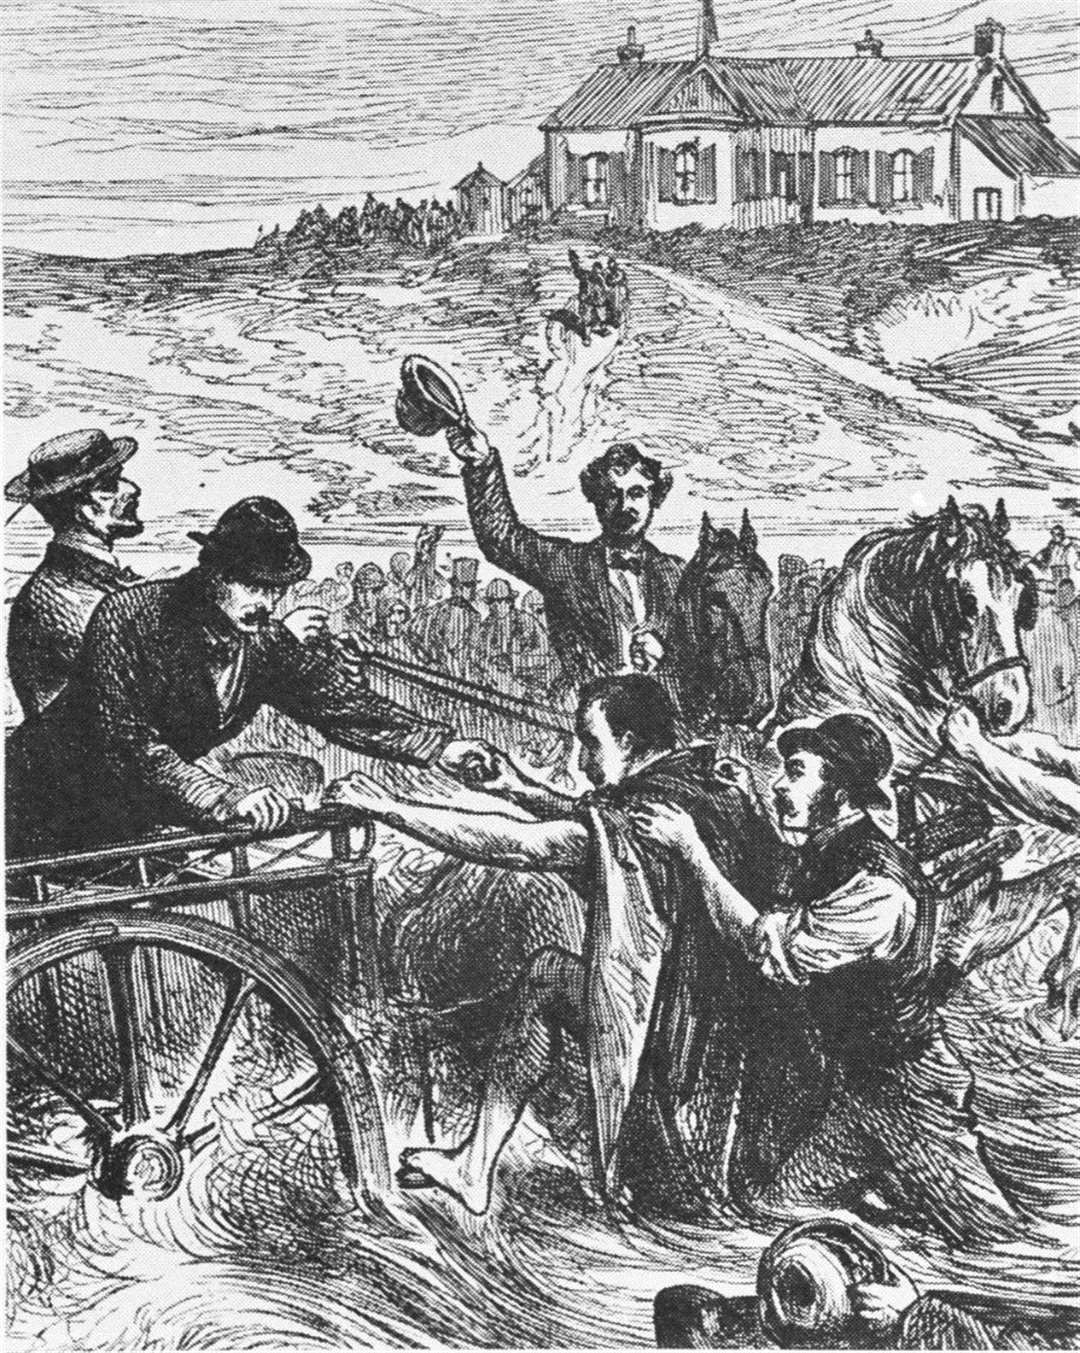 Cette gravure montre le capitaine Webb atterrissant en France après sa baignade réussie en 1875. Photo du musée de Douvres